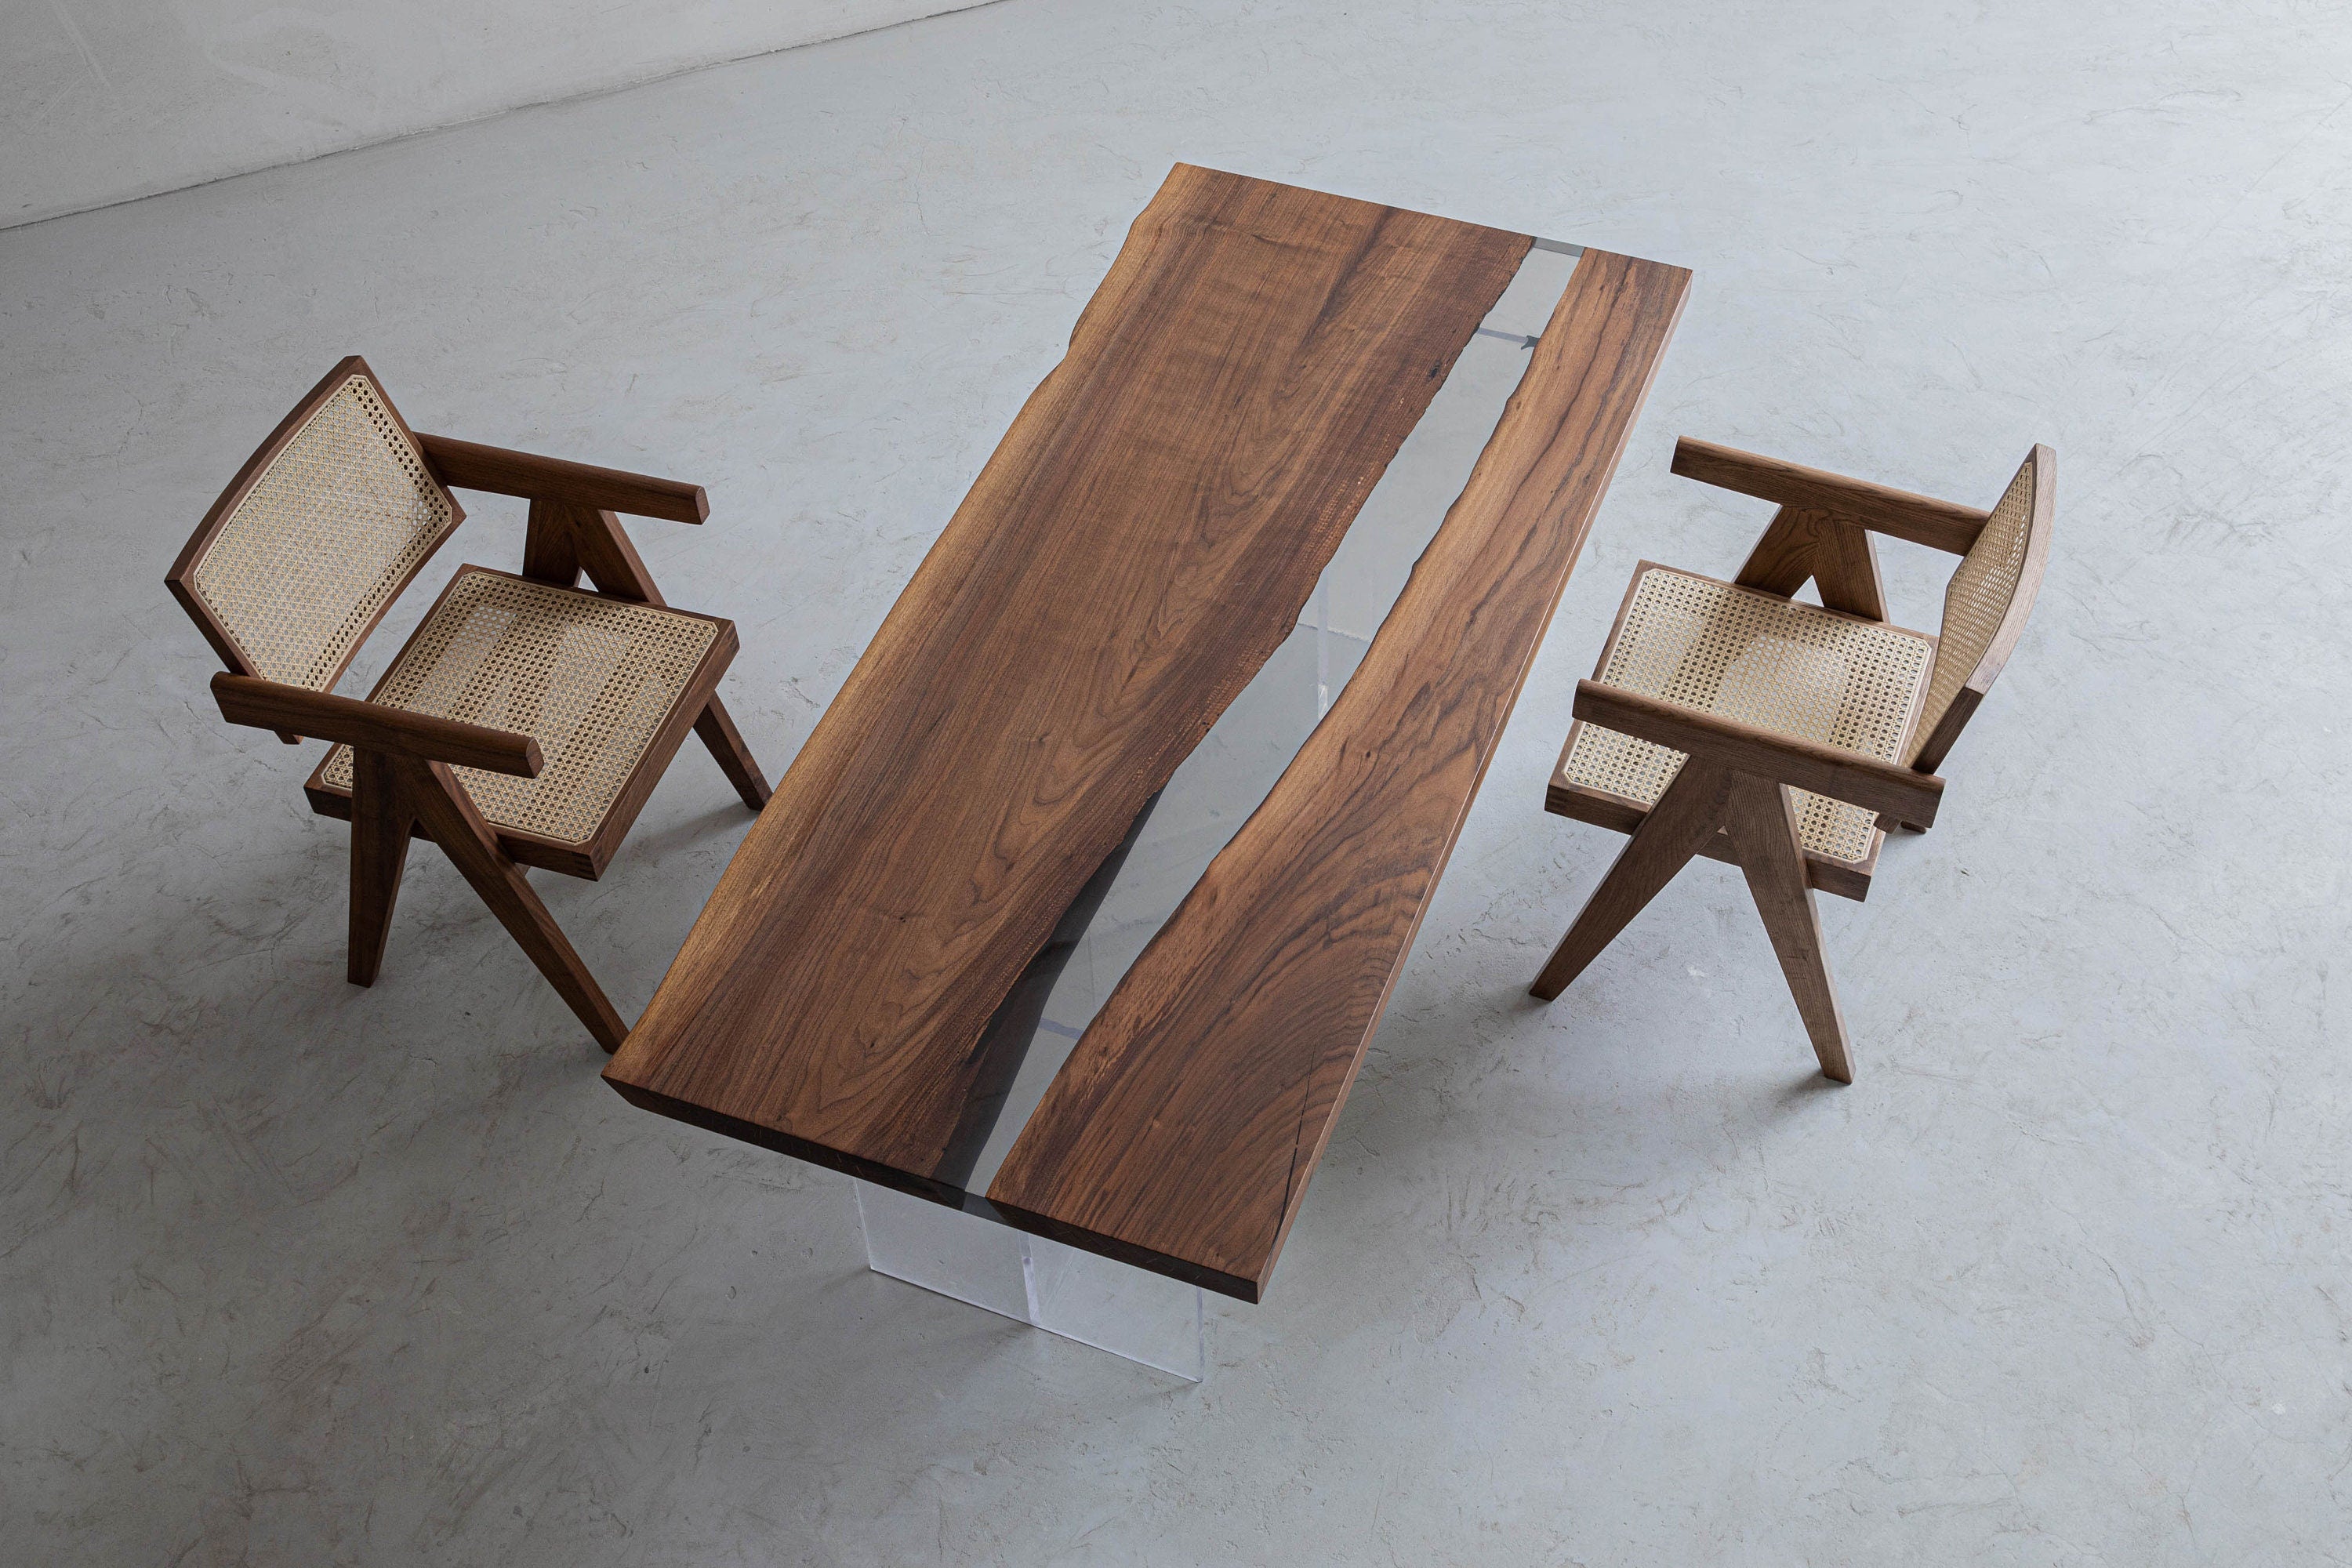 Tavolo epossidico fatto a mano, Bordo vivo per mobili trasparenti, Tavolo in resina epossidica speciale per legno